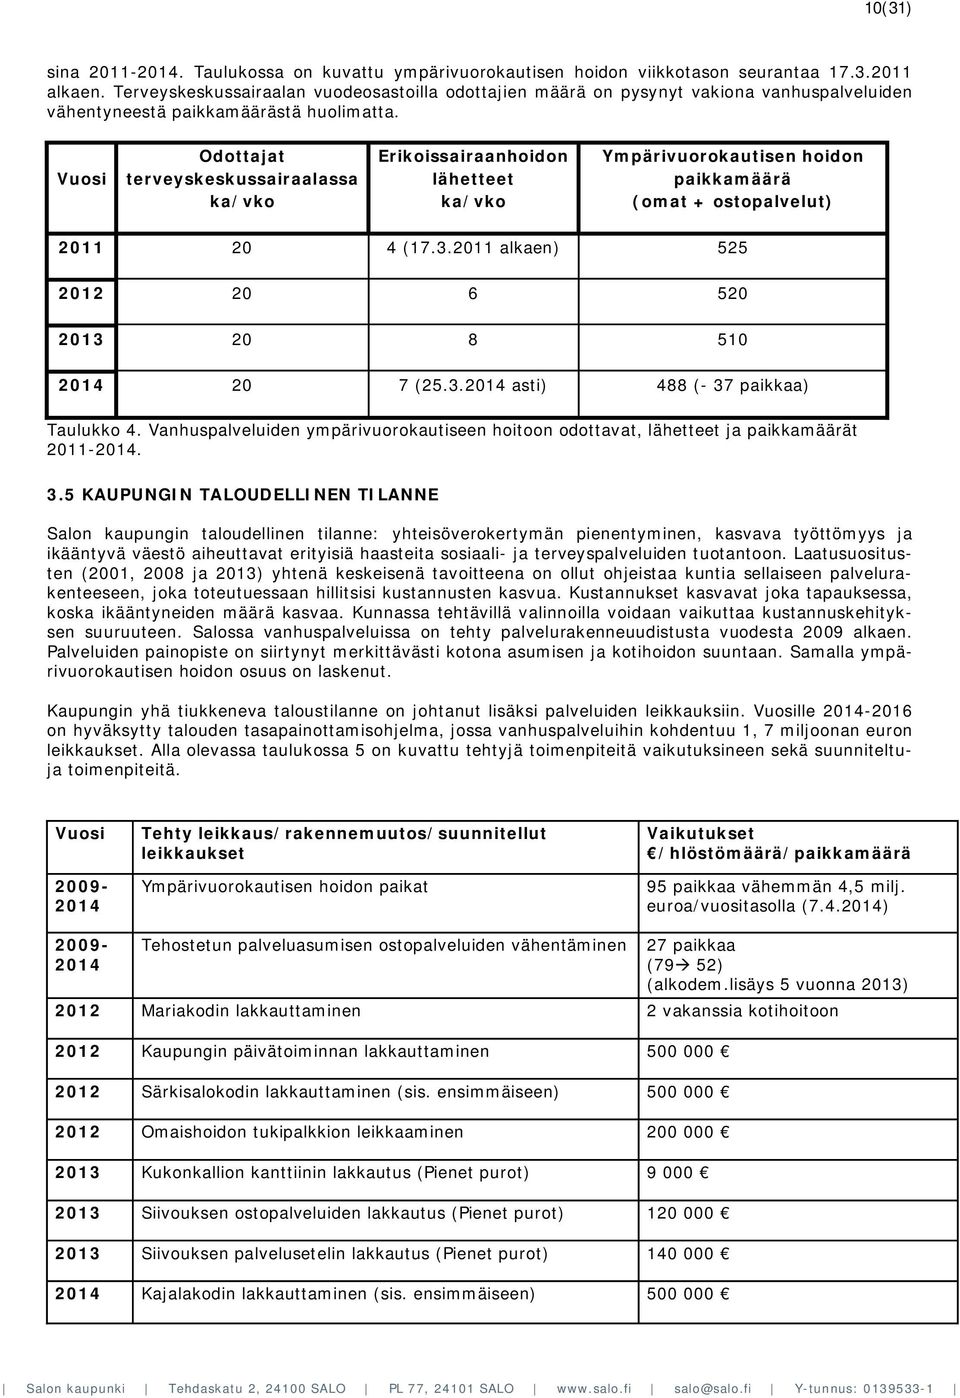 Vuosi Odottajat terveyskeskussairaalassa ka/vko Erikoissairaanhoidon lähetteet ka/vko Ympärivuorokautisen hoidon paikkamäärä (omat + ostopalvelut) 2011 20 4 (17.3.